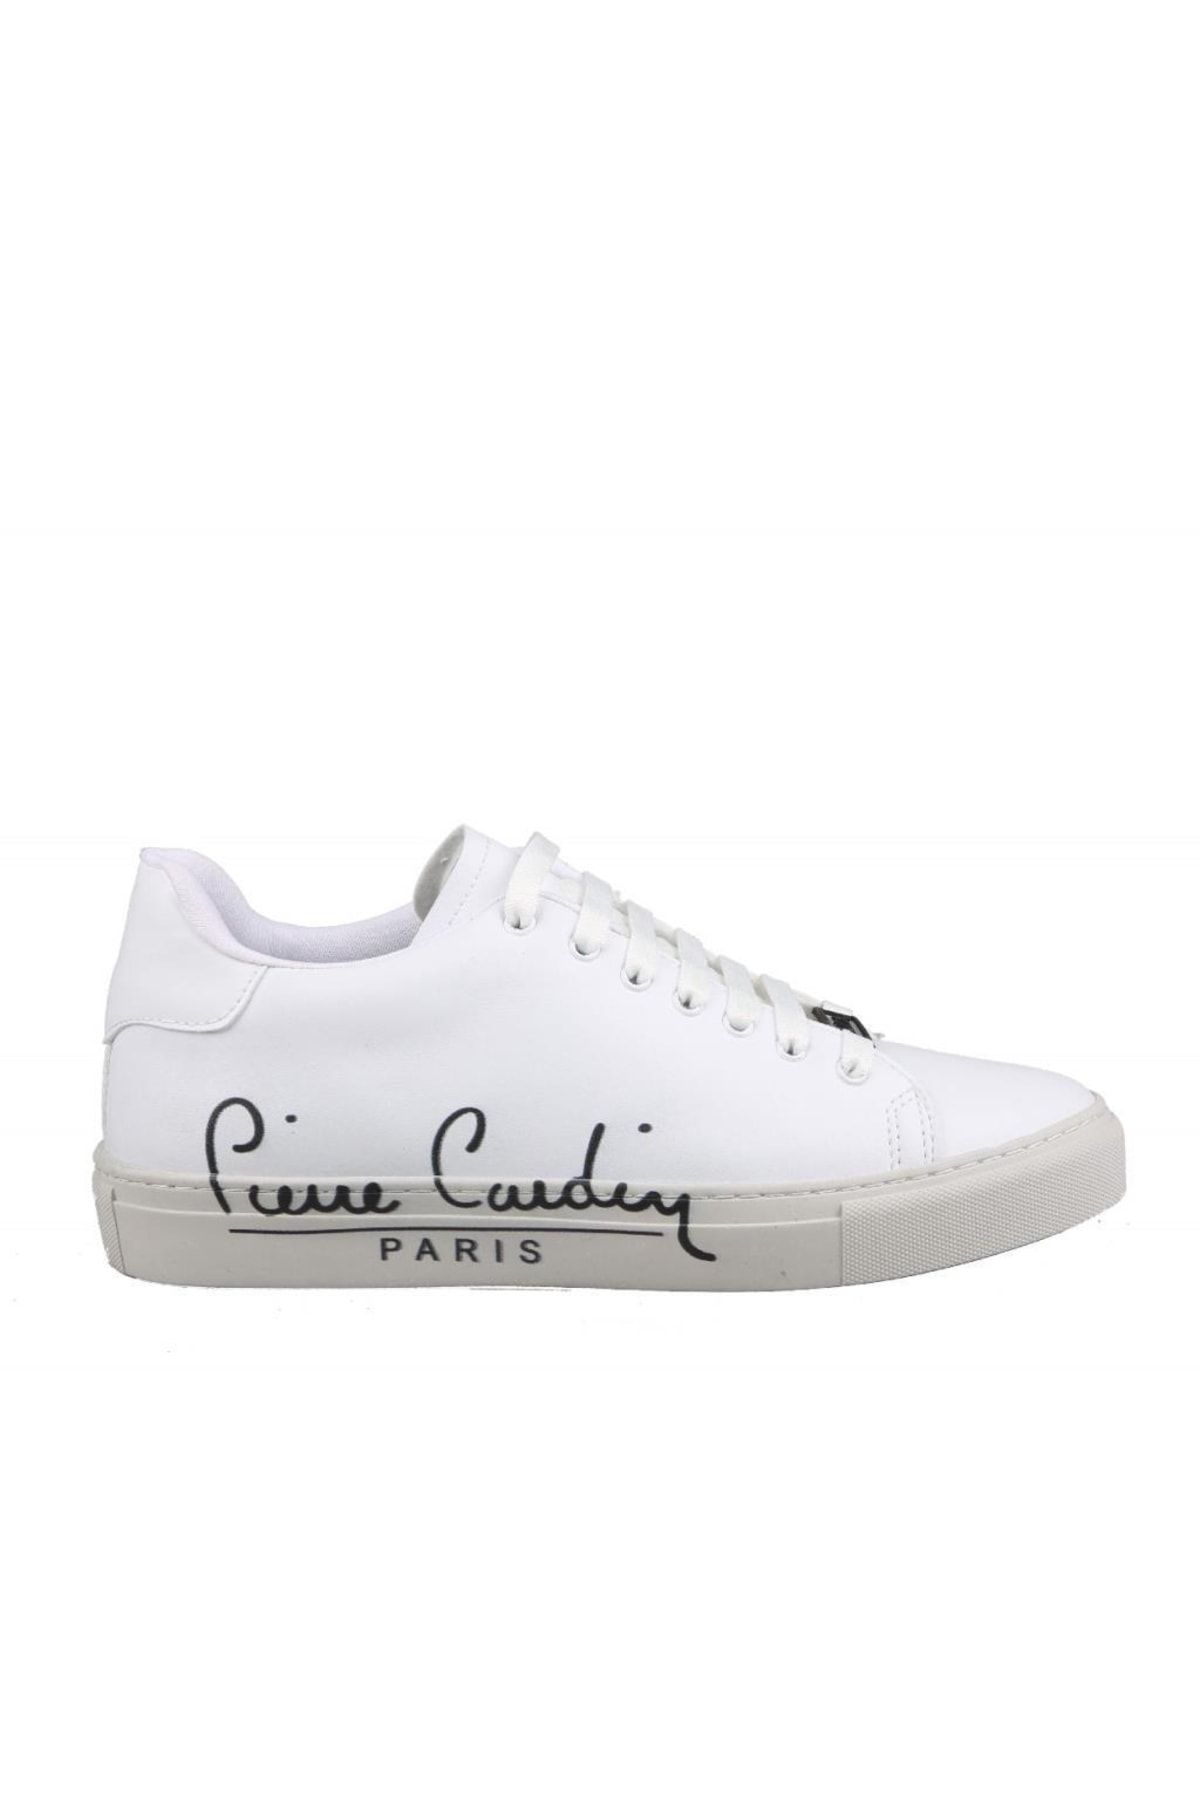 Pierre Cardin 28732 Hakiki Deri Beyaz Erkek Günlük Ayakkabı